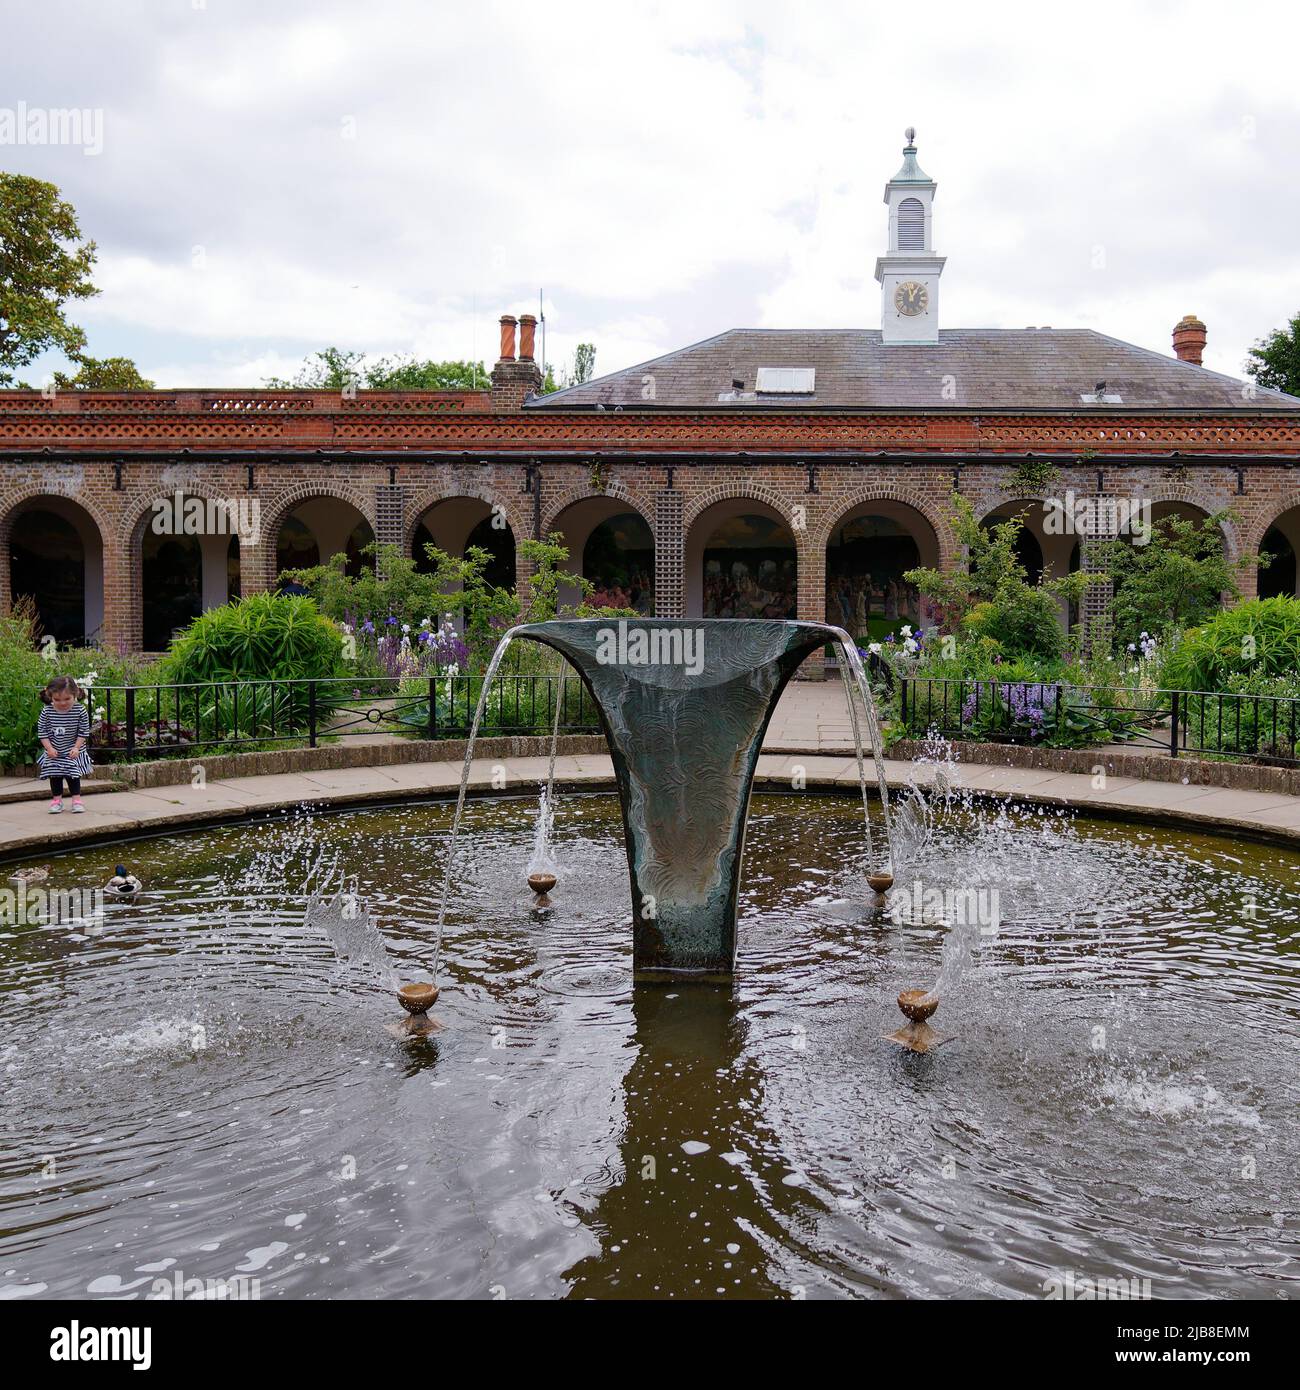 Londres, Grand Londres, Angleterre, 28 mai 2022 : fontaine avec l'Orangerie et tour derrière le parc Holland dans la région de Kensington. Banque D'Images